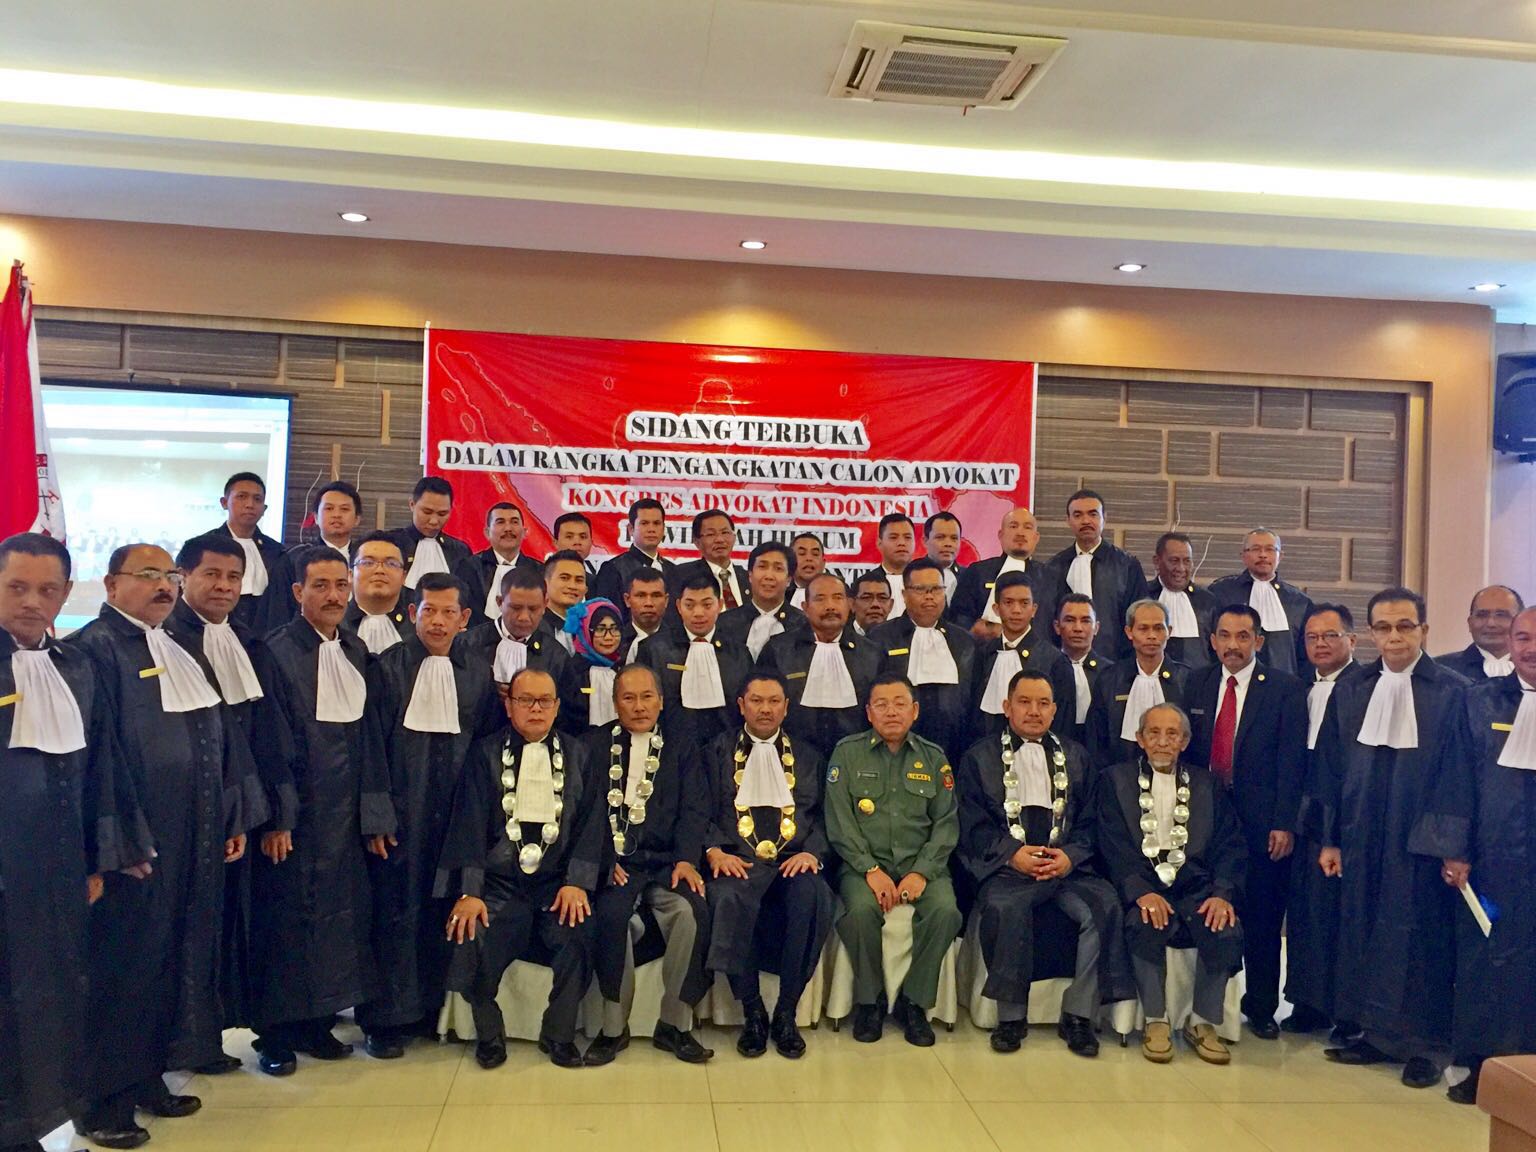 Pengangkatan Advokat KAI Kalimantan Barat dihadiri oleh Gubernur Kalimantan Barat